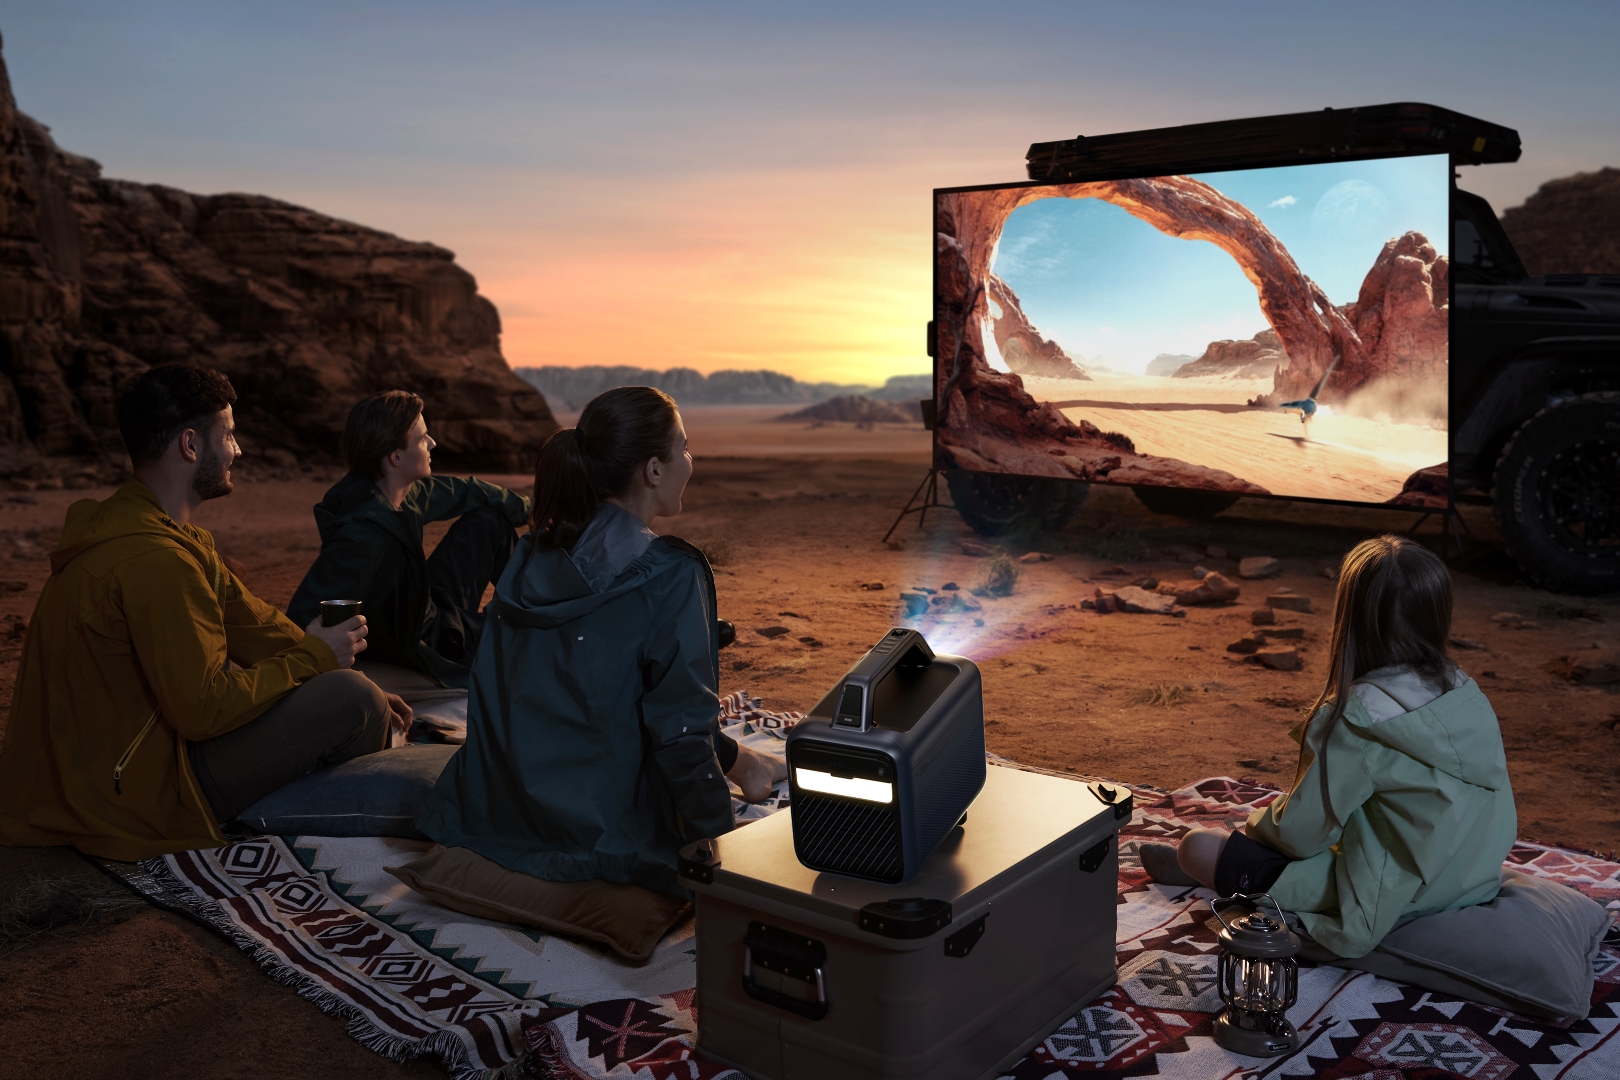 El proyector para exteriores Anker Nebula Mars 3 que muestra una película en una pantalla en el desierto.